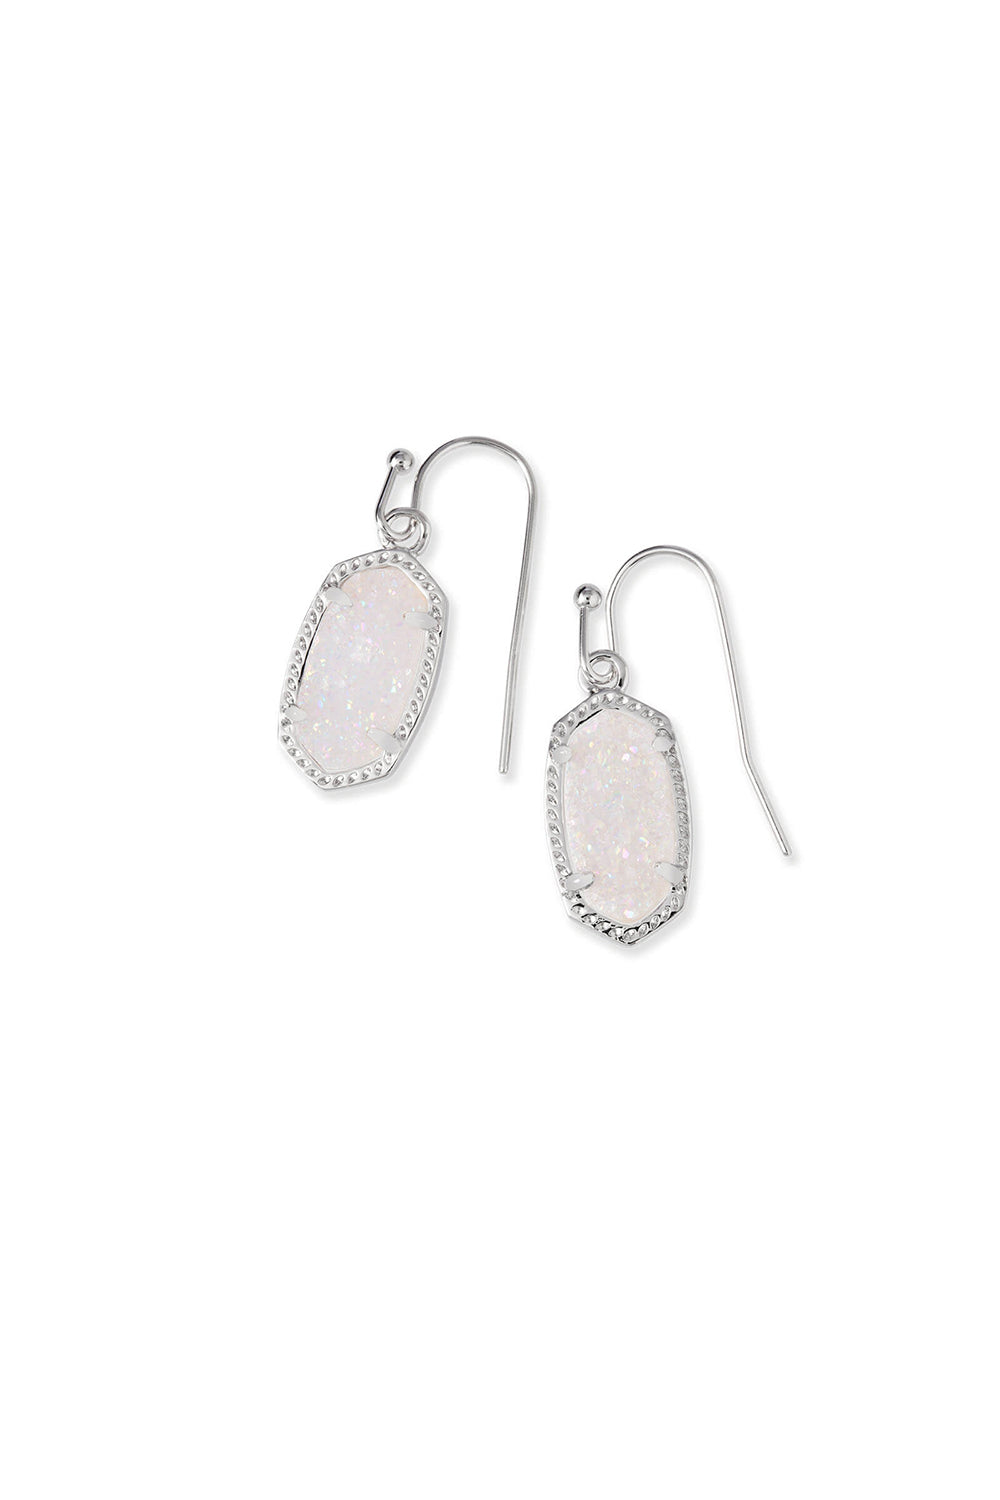 Kendra Scott: Lee Silver Drop Earrings - Iridescent Drusy | Makk Fashions